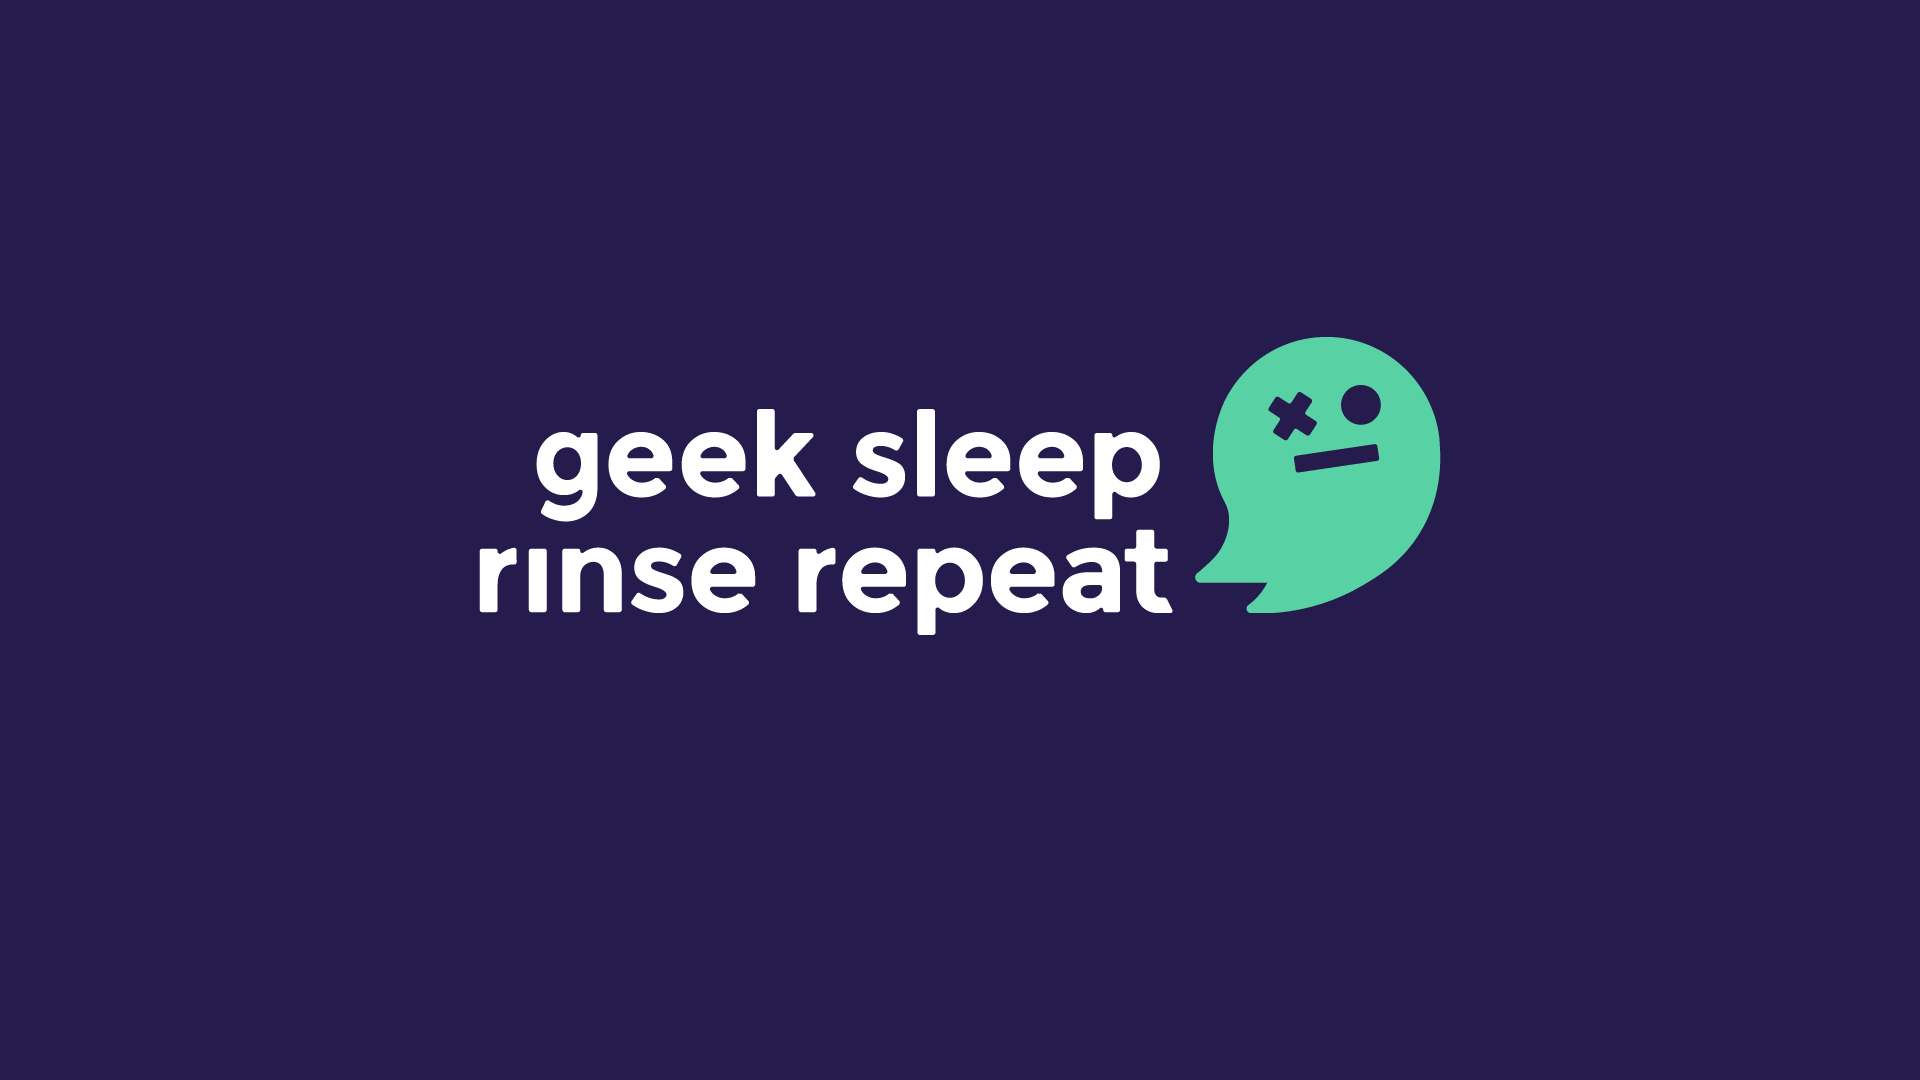 Games of The Year 2017 - Geek Sleep Rinse Repeat